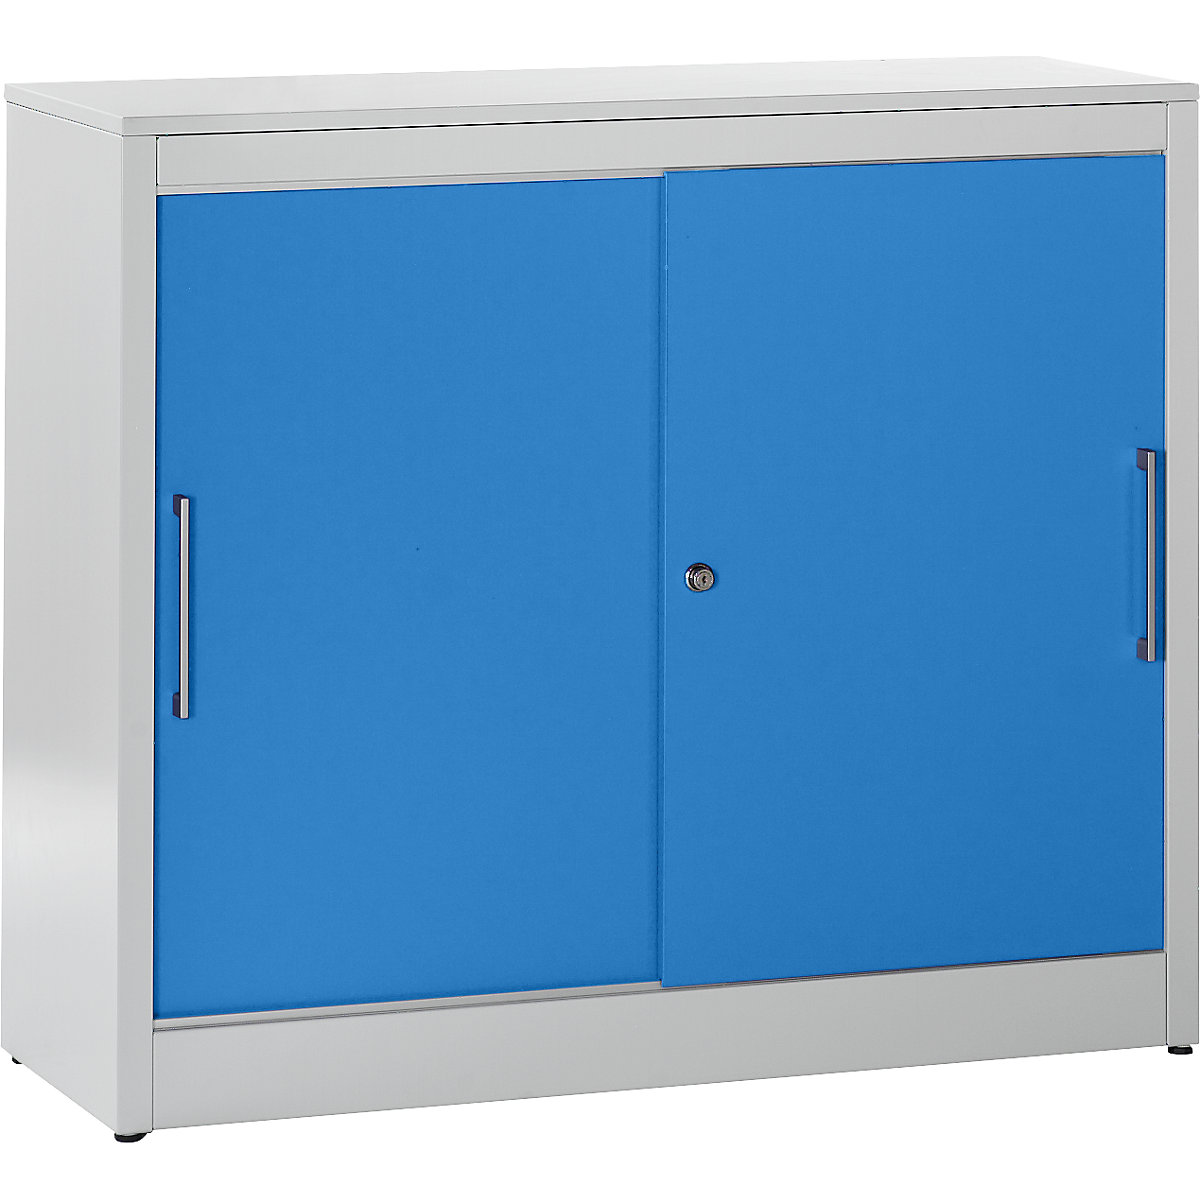 Schiebetürschrank mauser, Sideboard mit 2 Fachböden, HxBxT 1040 x 1200 x 420 mm, lichtgrau / lichtblau-9